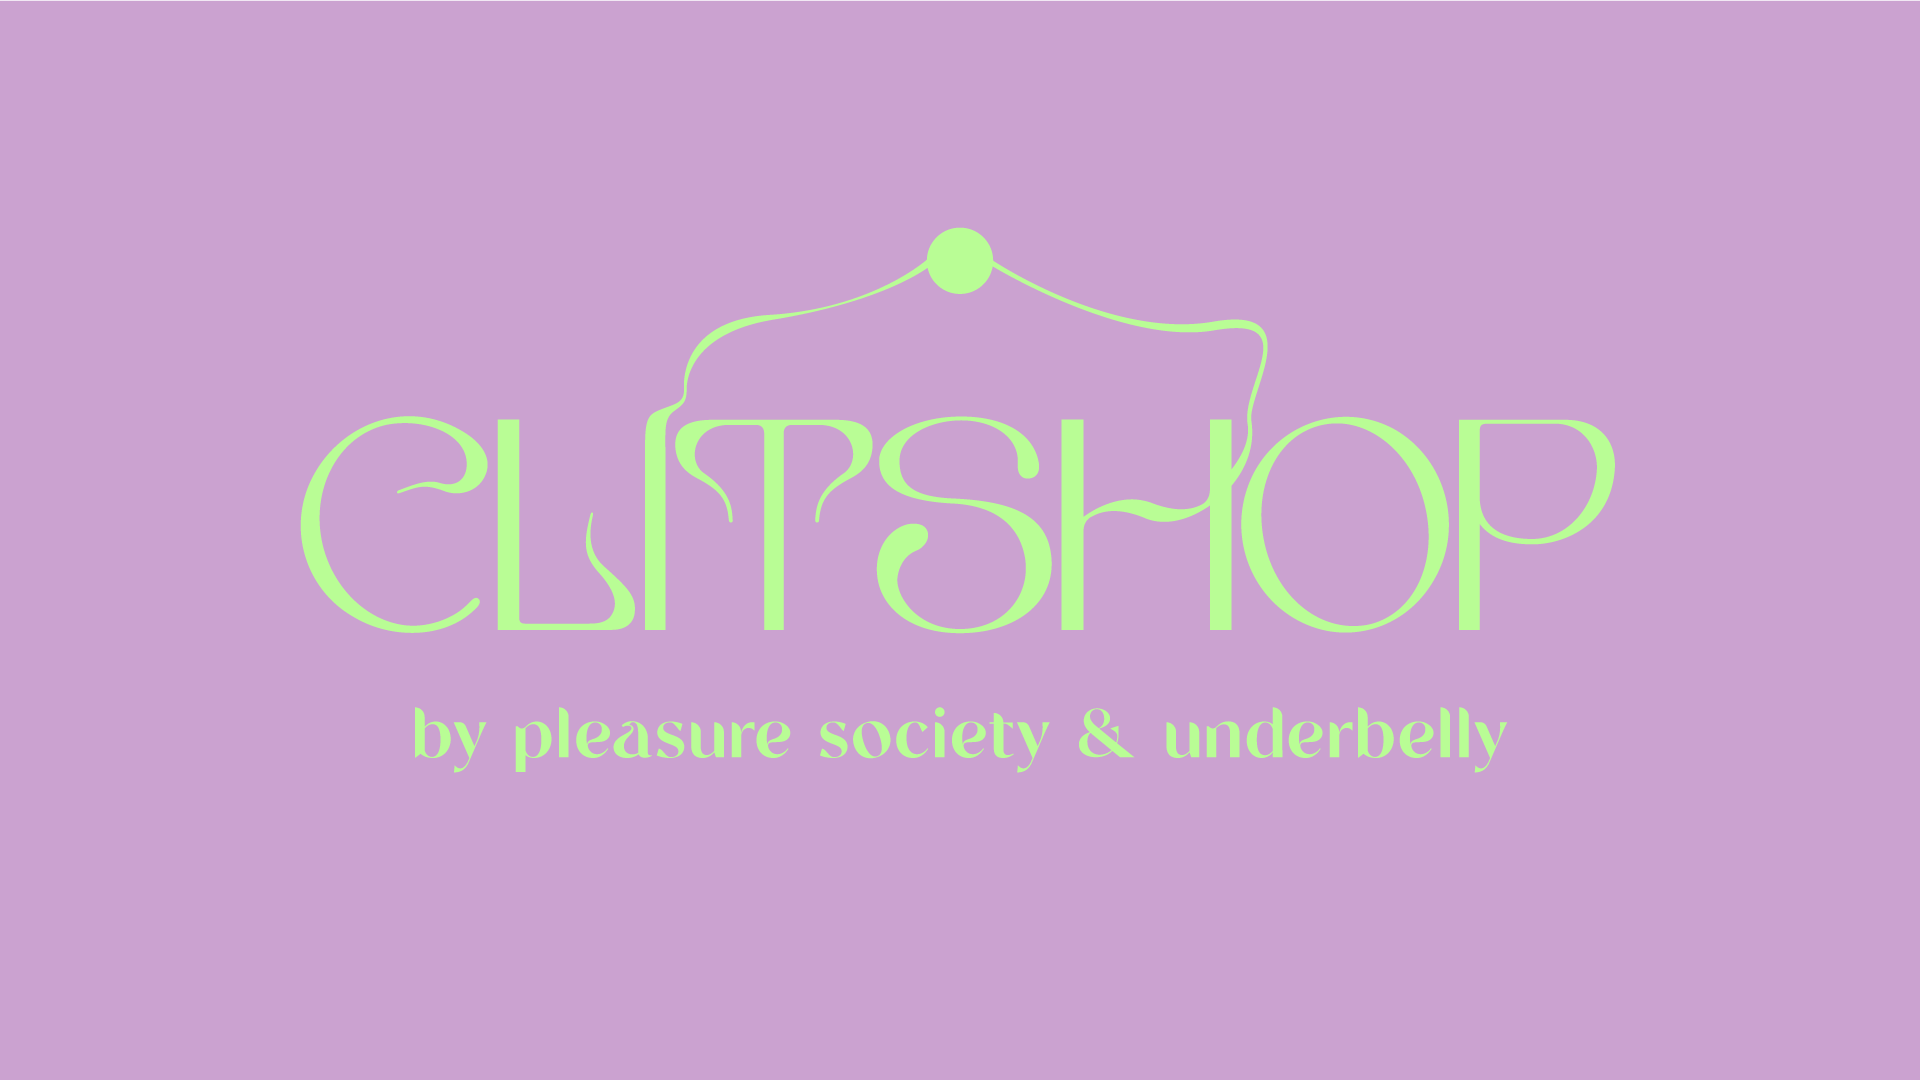 Clitshop